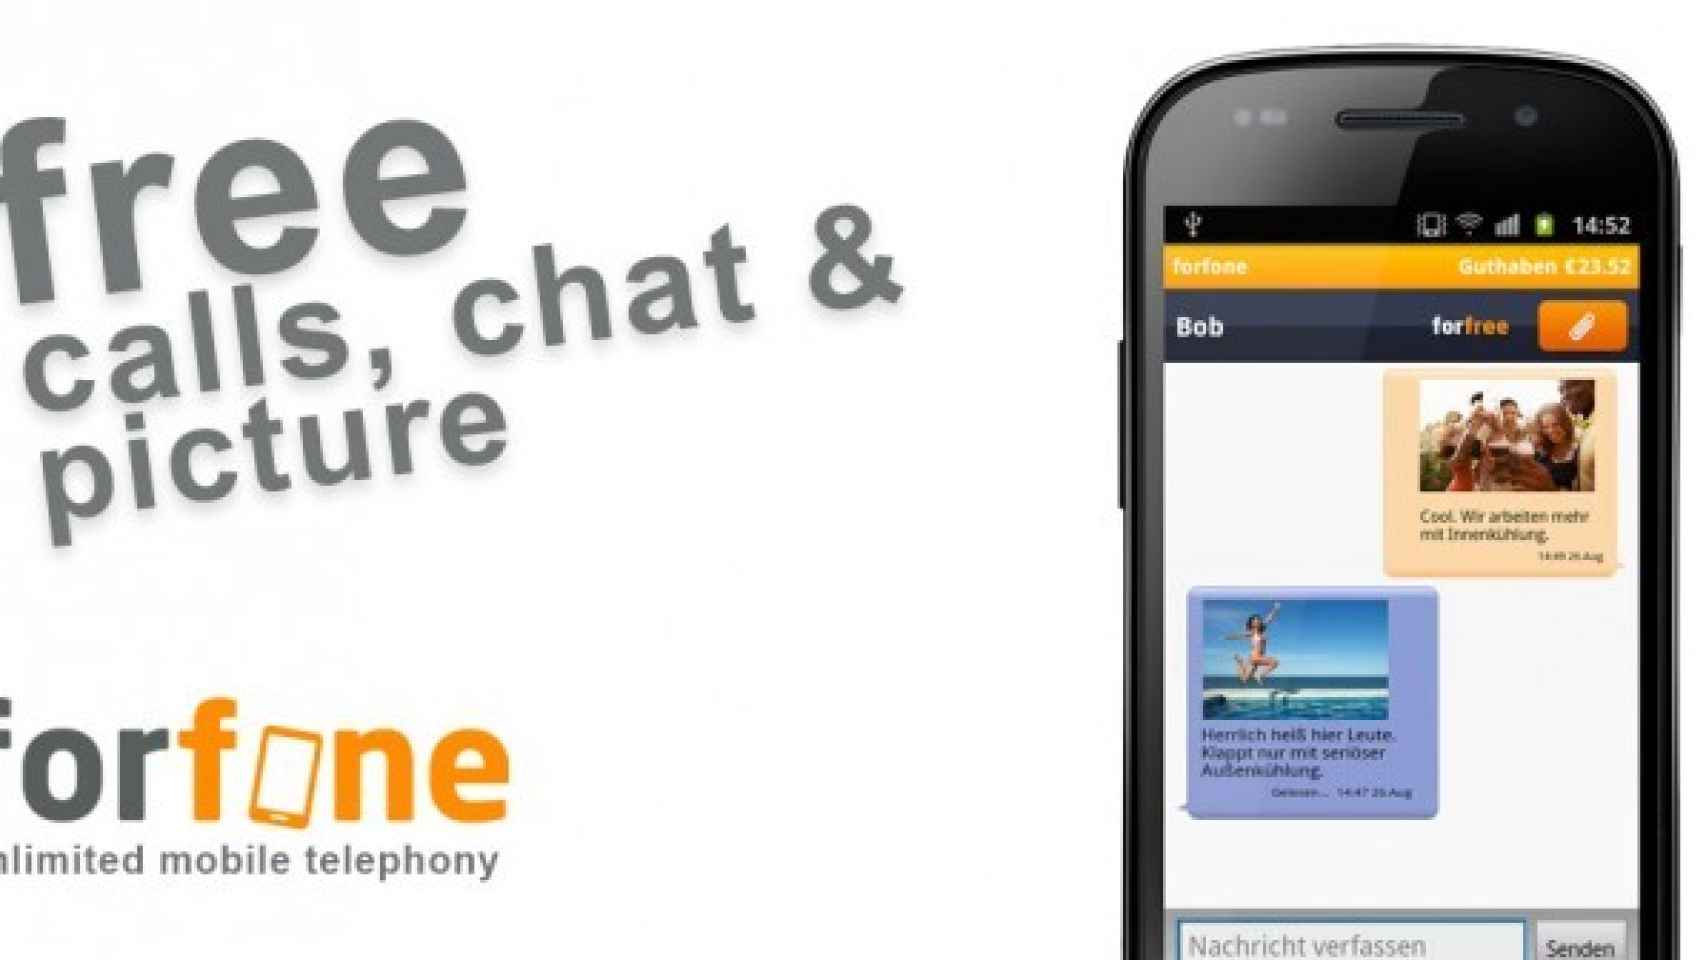 Llama, manda SMS y fotos gratis con Forfone, un duro rival de Viber y Tango